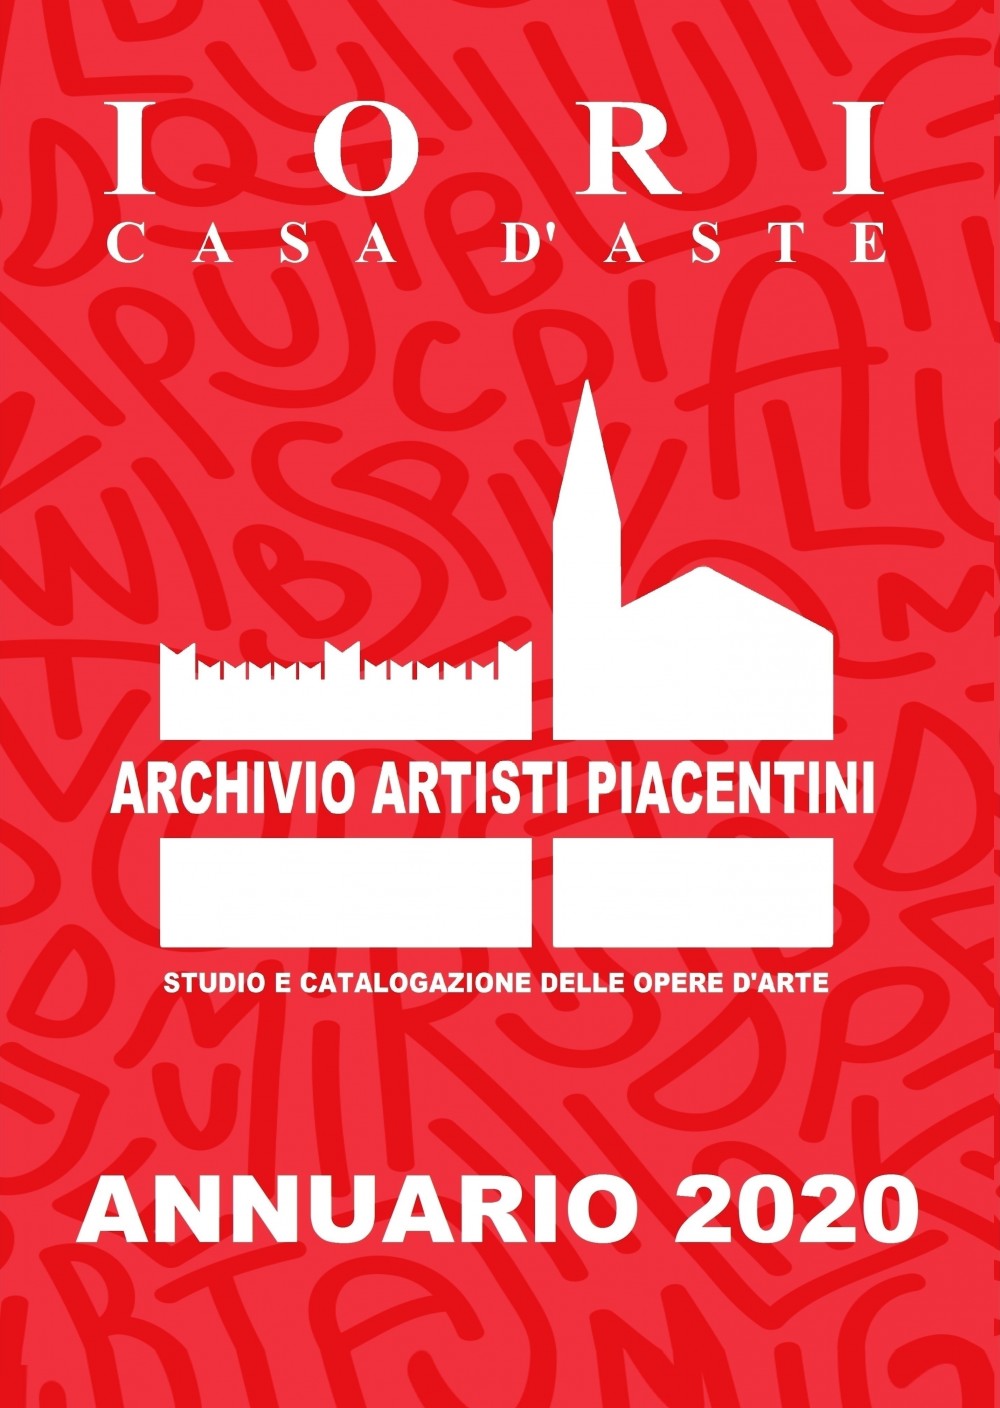 ACQUISTA IL NUOVO CATALOGO " ANNUARIO 2020 "  ARCHIVIO ARTISTI PIACENTINI - IORI CASA D'ASTE